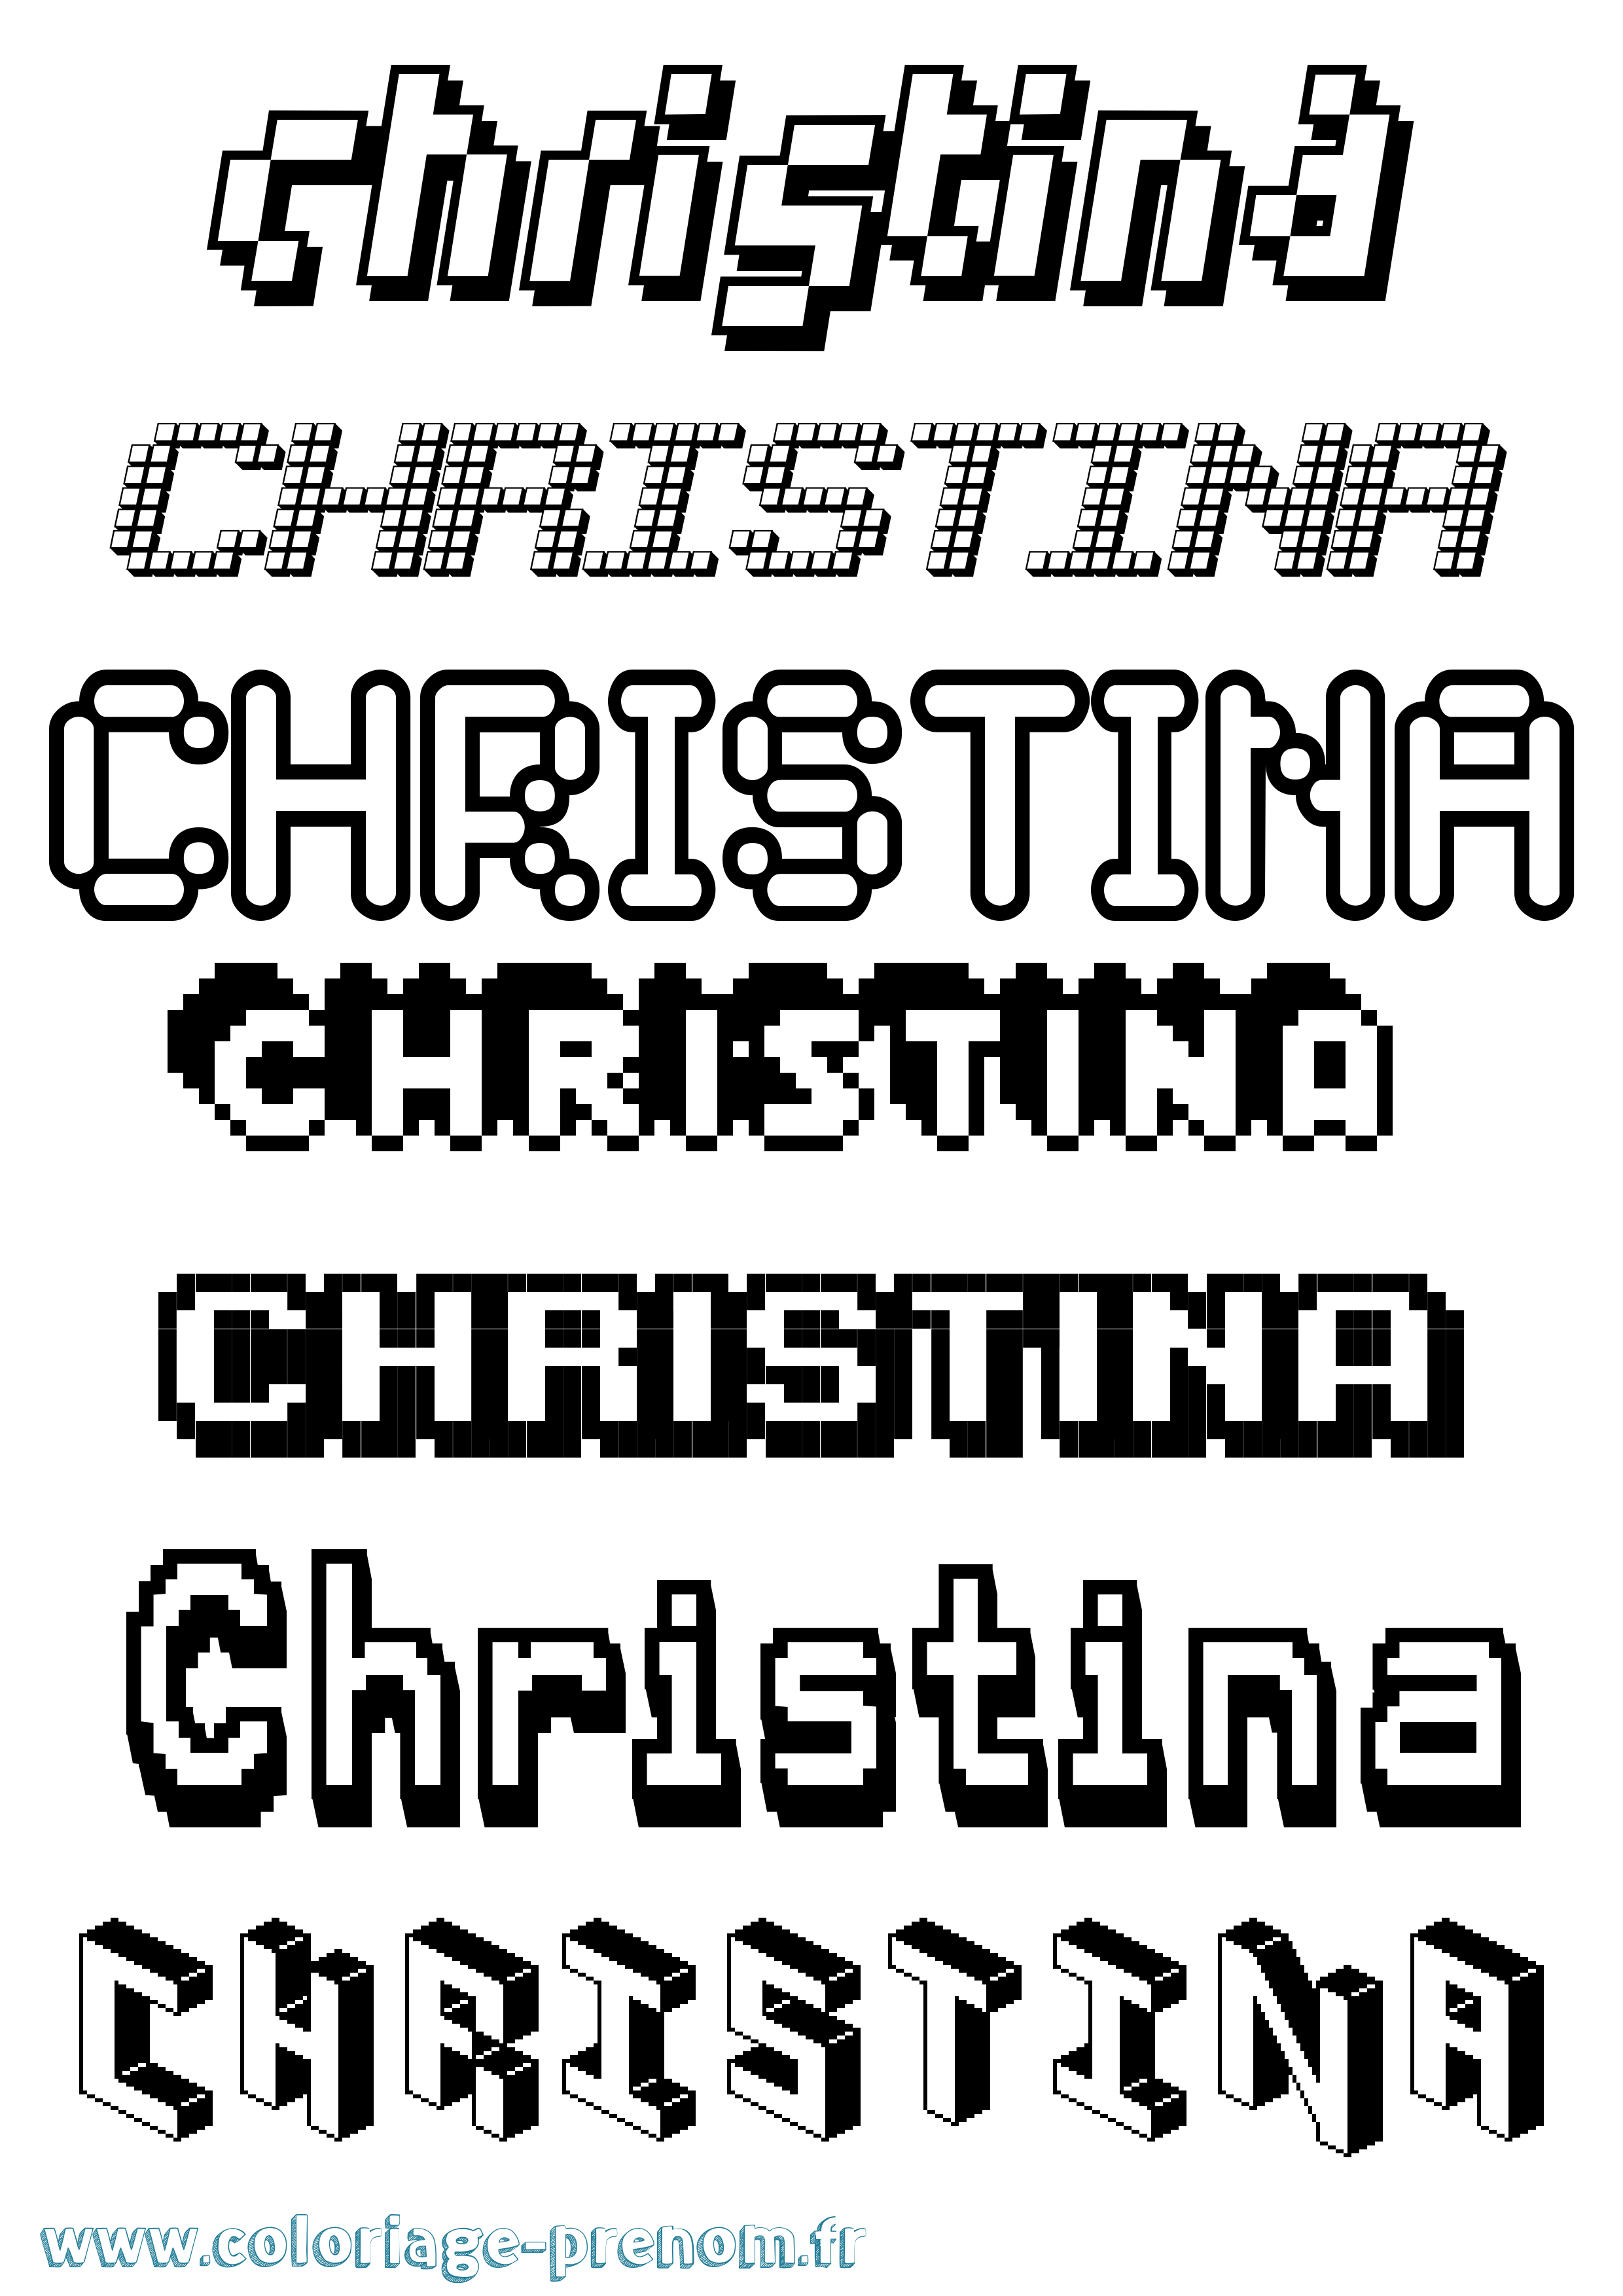 Coloriage prénom Christina